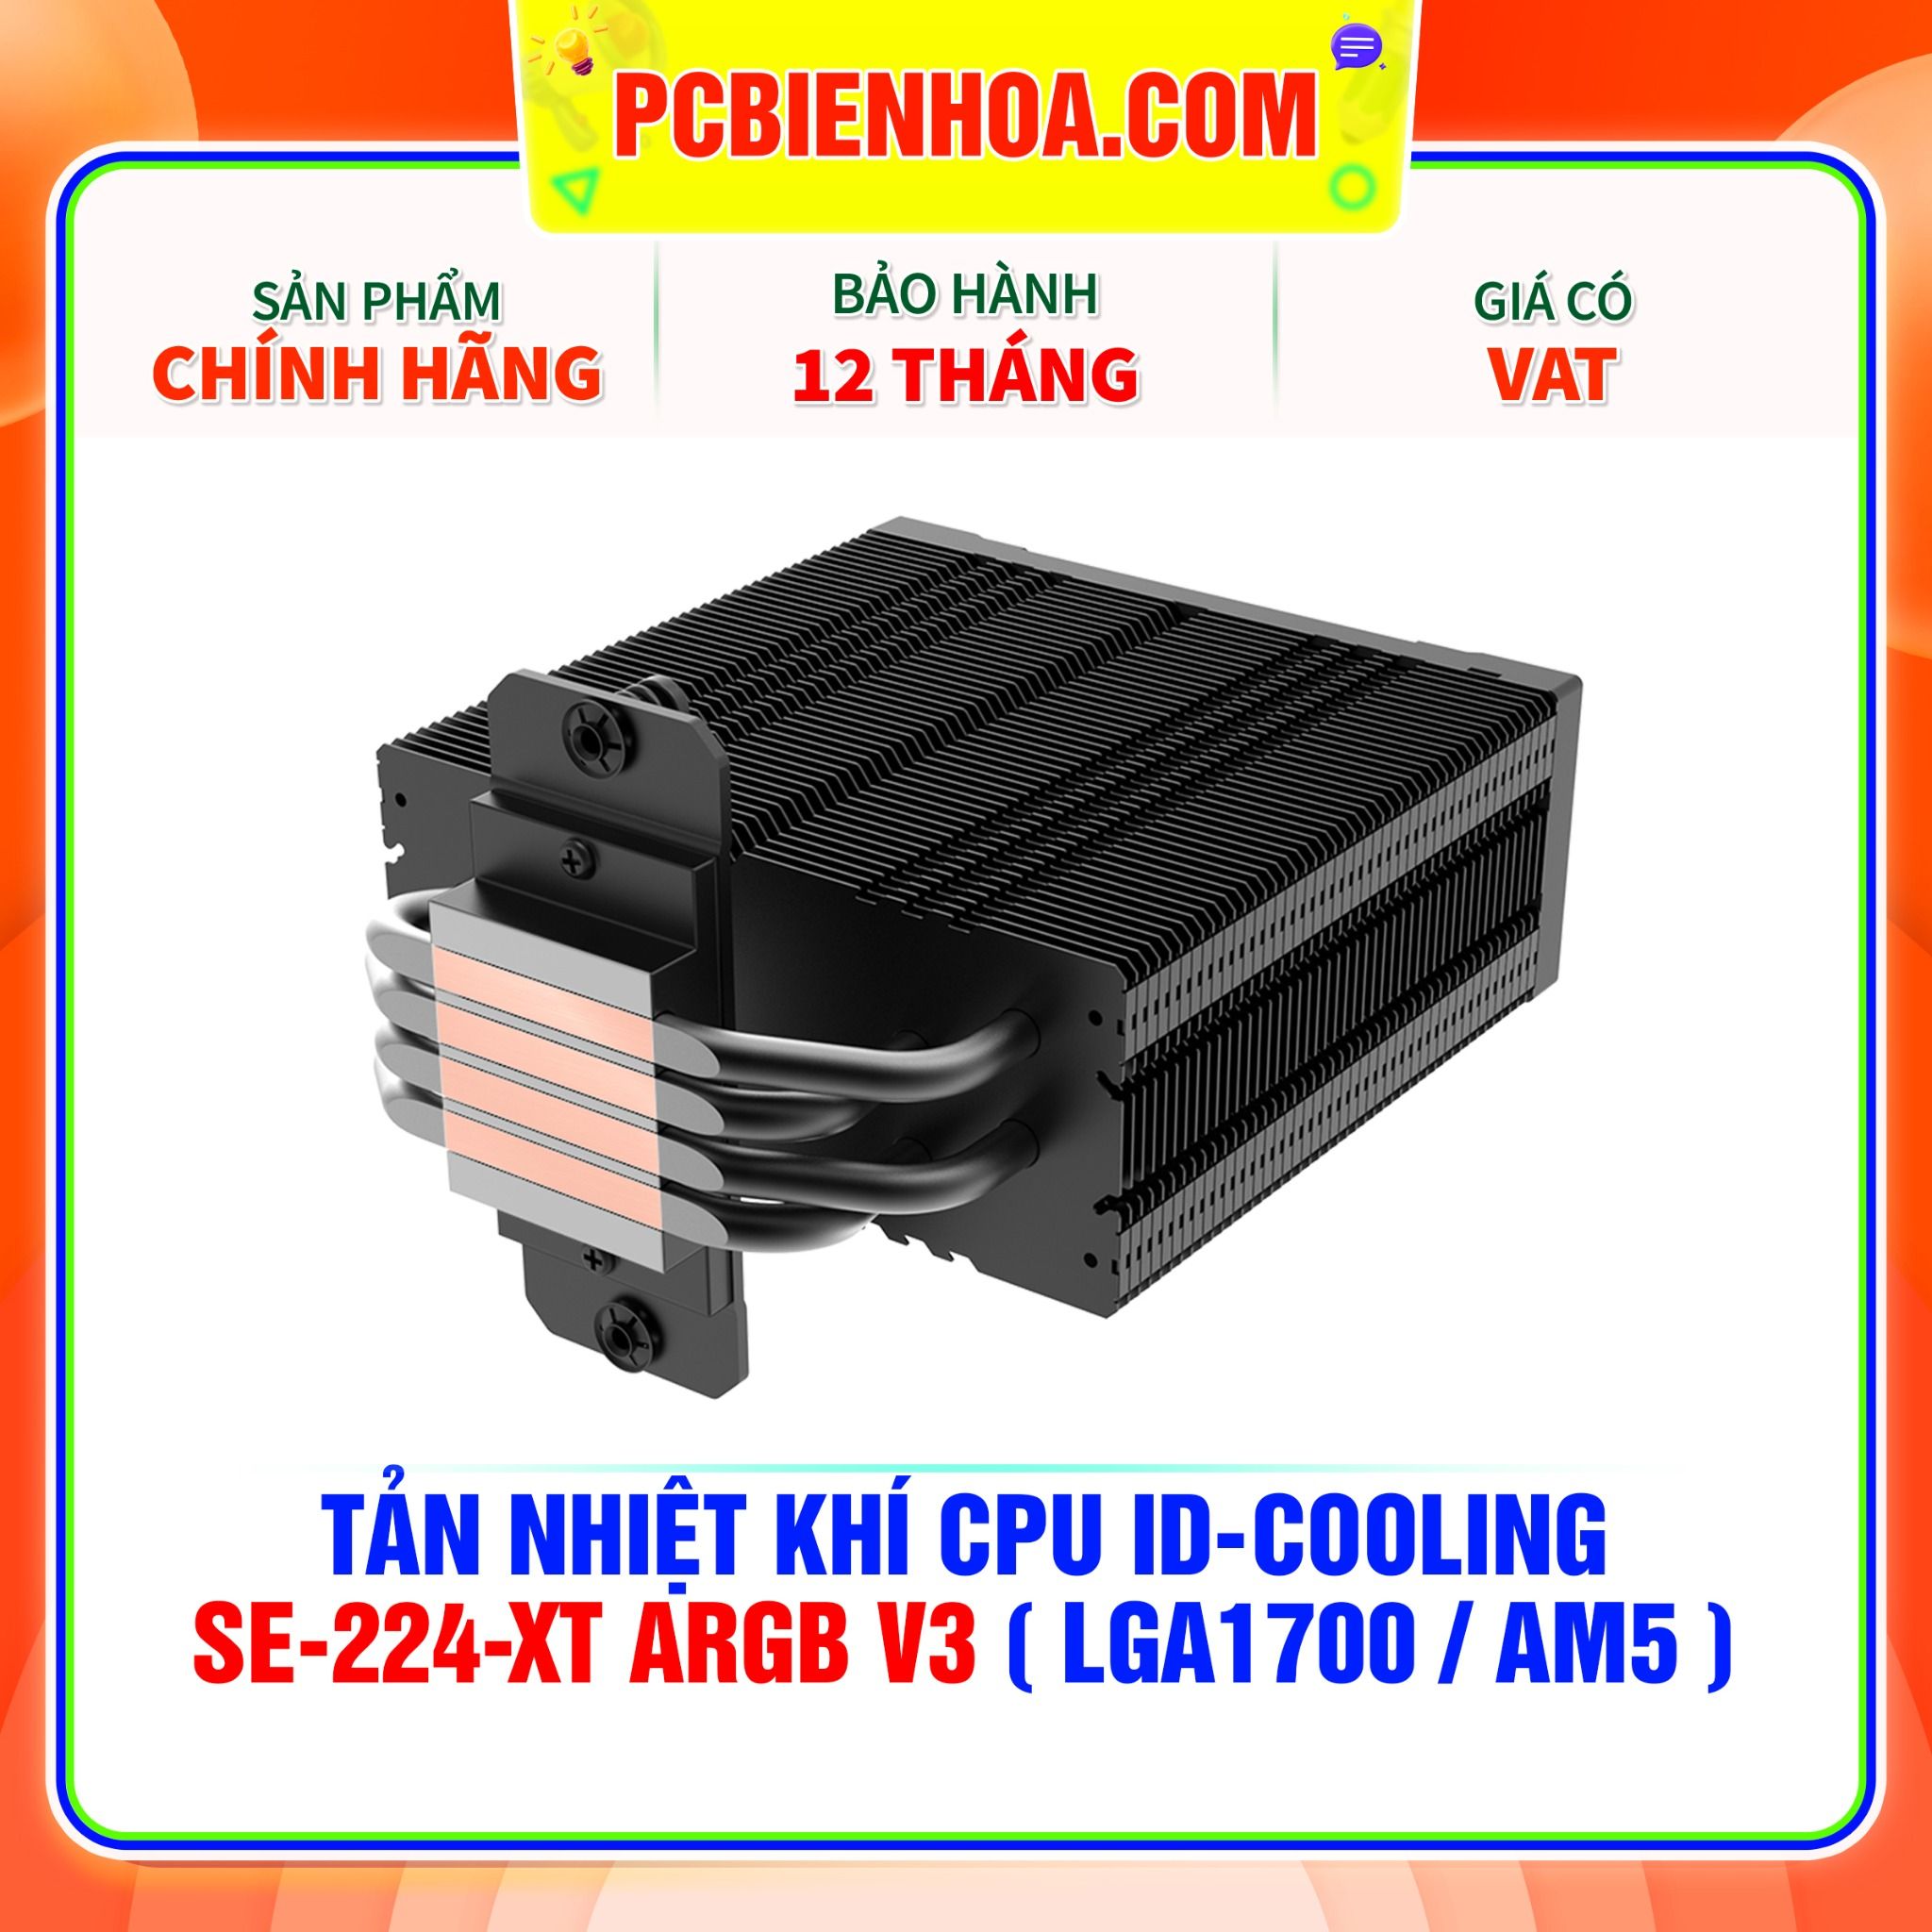  TẢN NHIỆT KHÍ CPU ID-COOLING SE-224-XT ARGB V3 ( HỖ TRỢ SOCKET LGA1700 / AM5 ) 